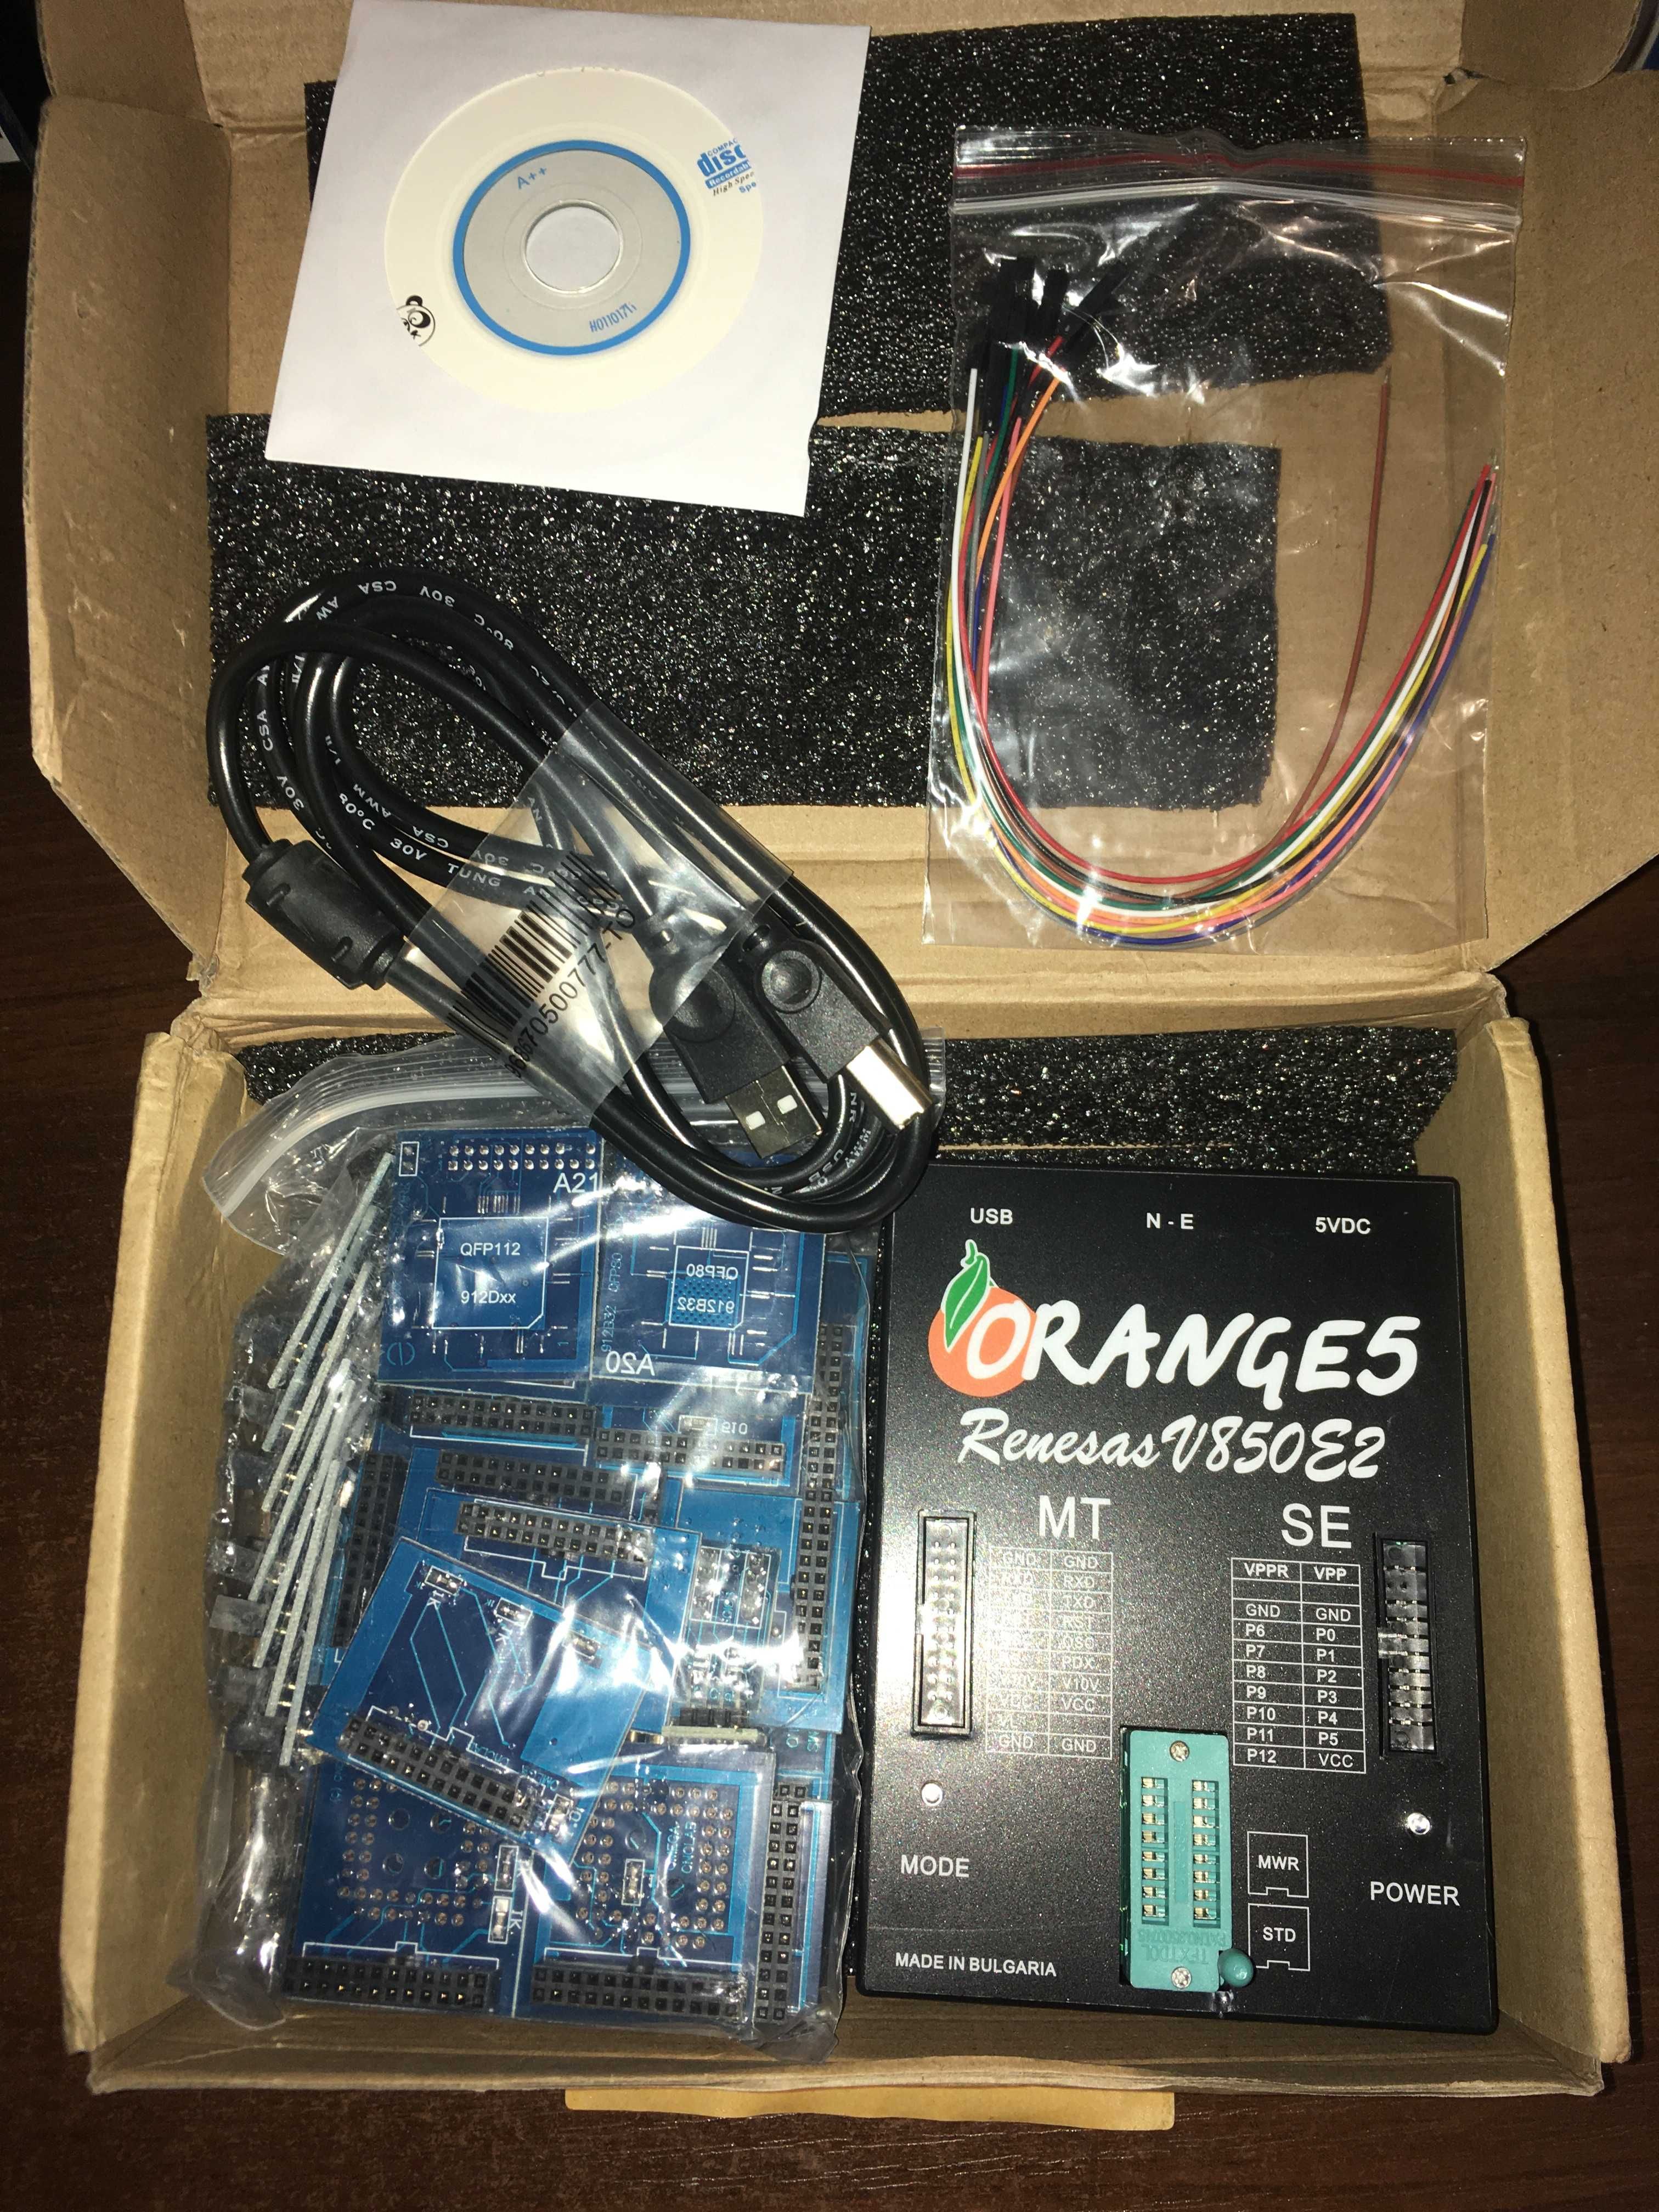 Программатор Orange 5 v1.36 с комплектом адаптеров